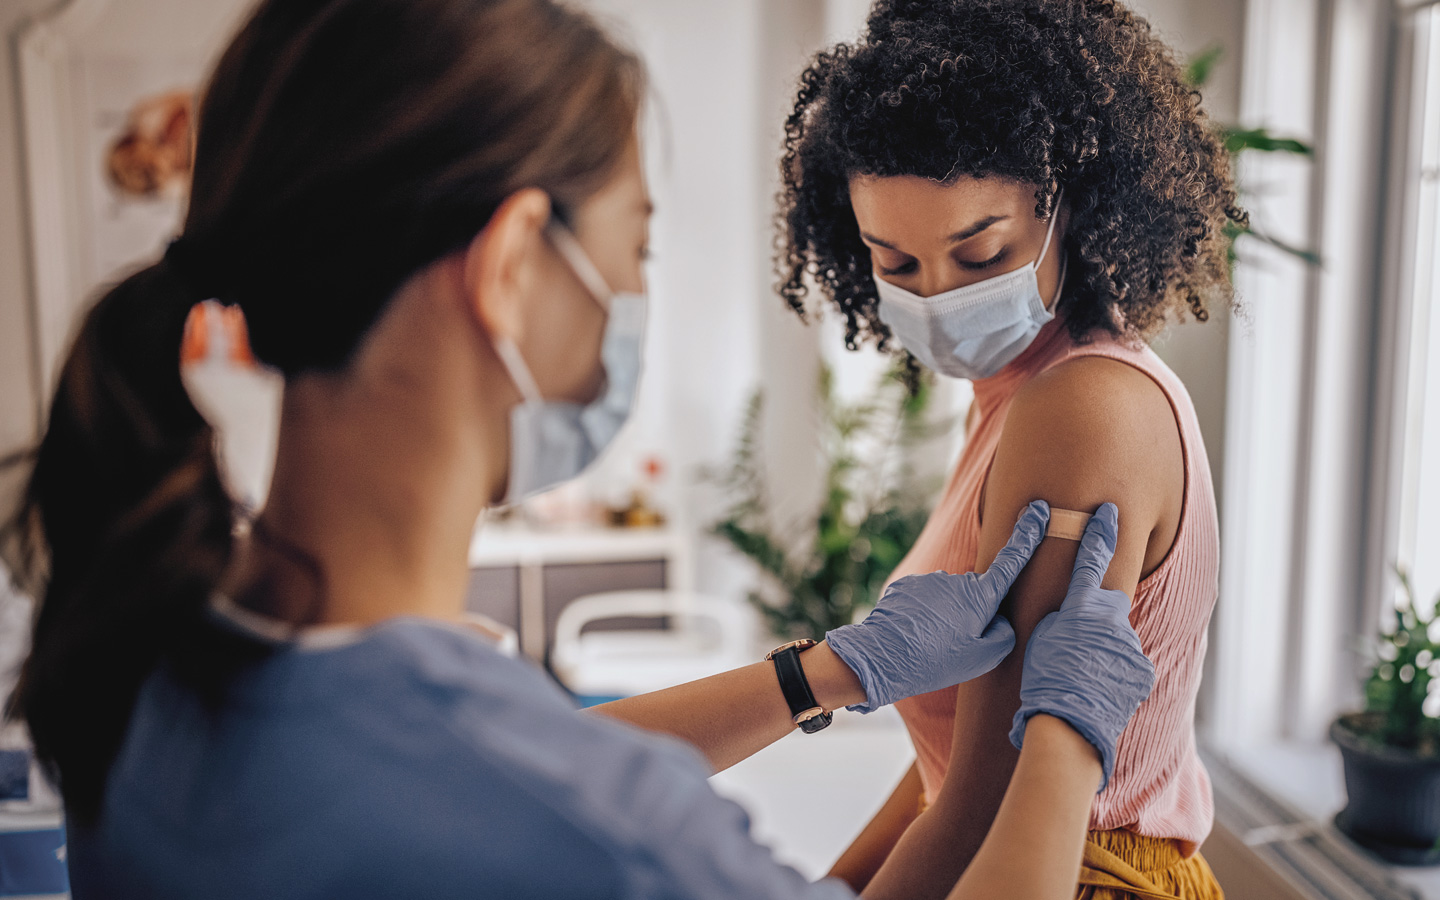 Foto: Krankenschwester mit Mundschutz und Handschuhen klebt einer Frau mit Mundschutz ein Pflaster auf den Oberarm